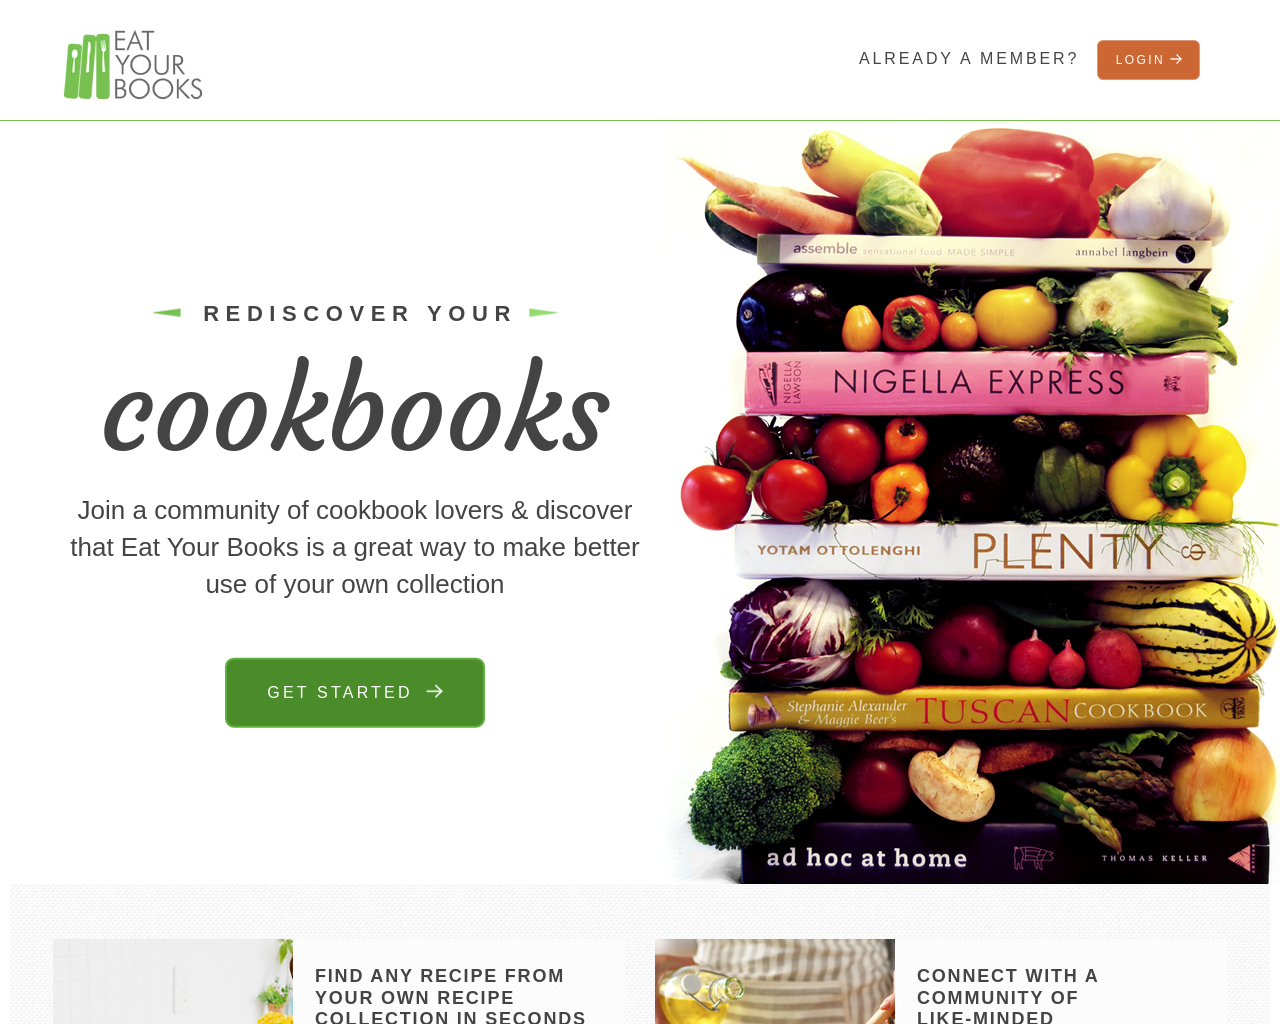 eatyourbooks.com